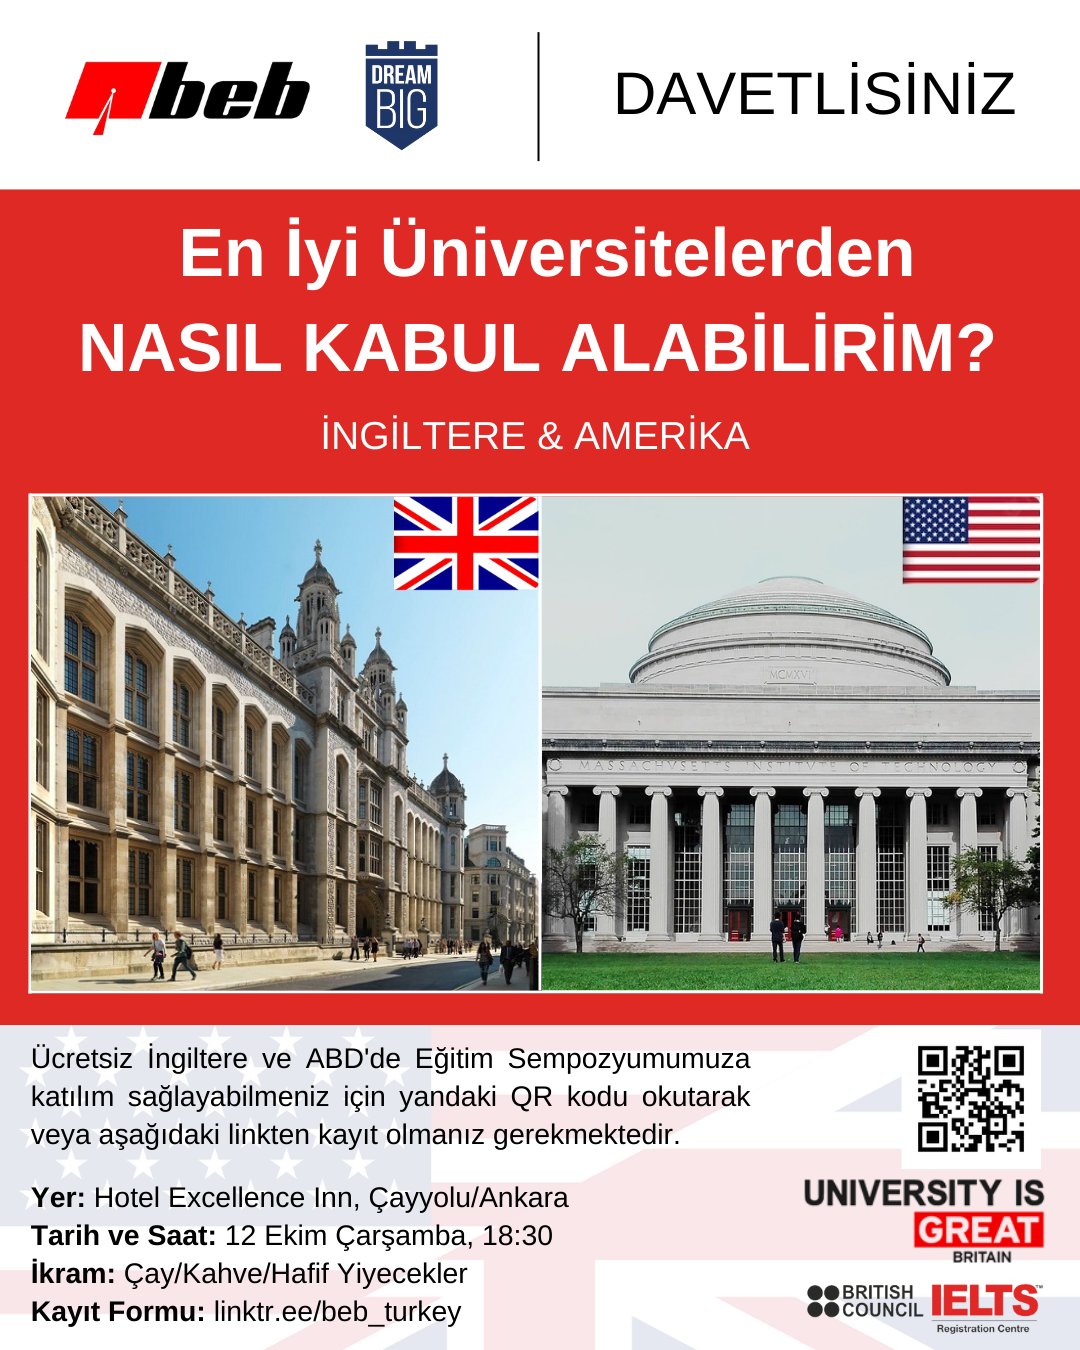 İngiltere ve Amerika'da Üniversite Eğitimi Sempozyumu'na ait davetiye görseli ve görselde yer alan Birleşik Krallık ve ABD'deki önemli Üniversitelerin kampüsleri ile bu ülkelere ait bayraklar